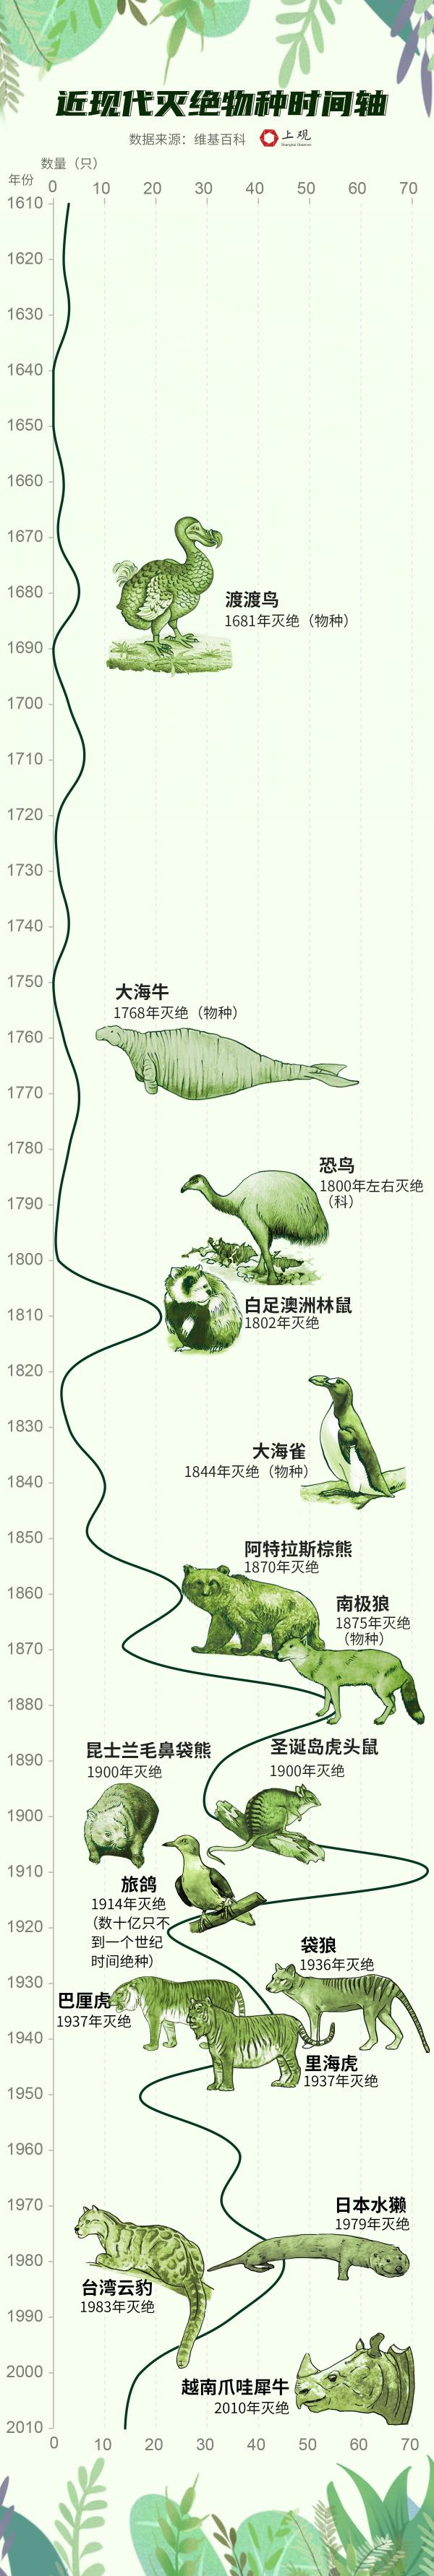 物种灭绝时间表图片